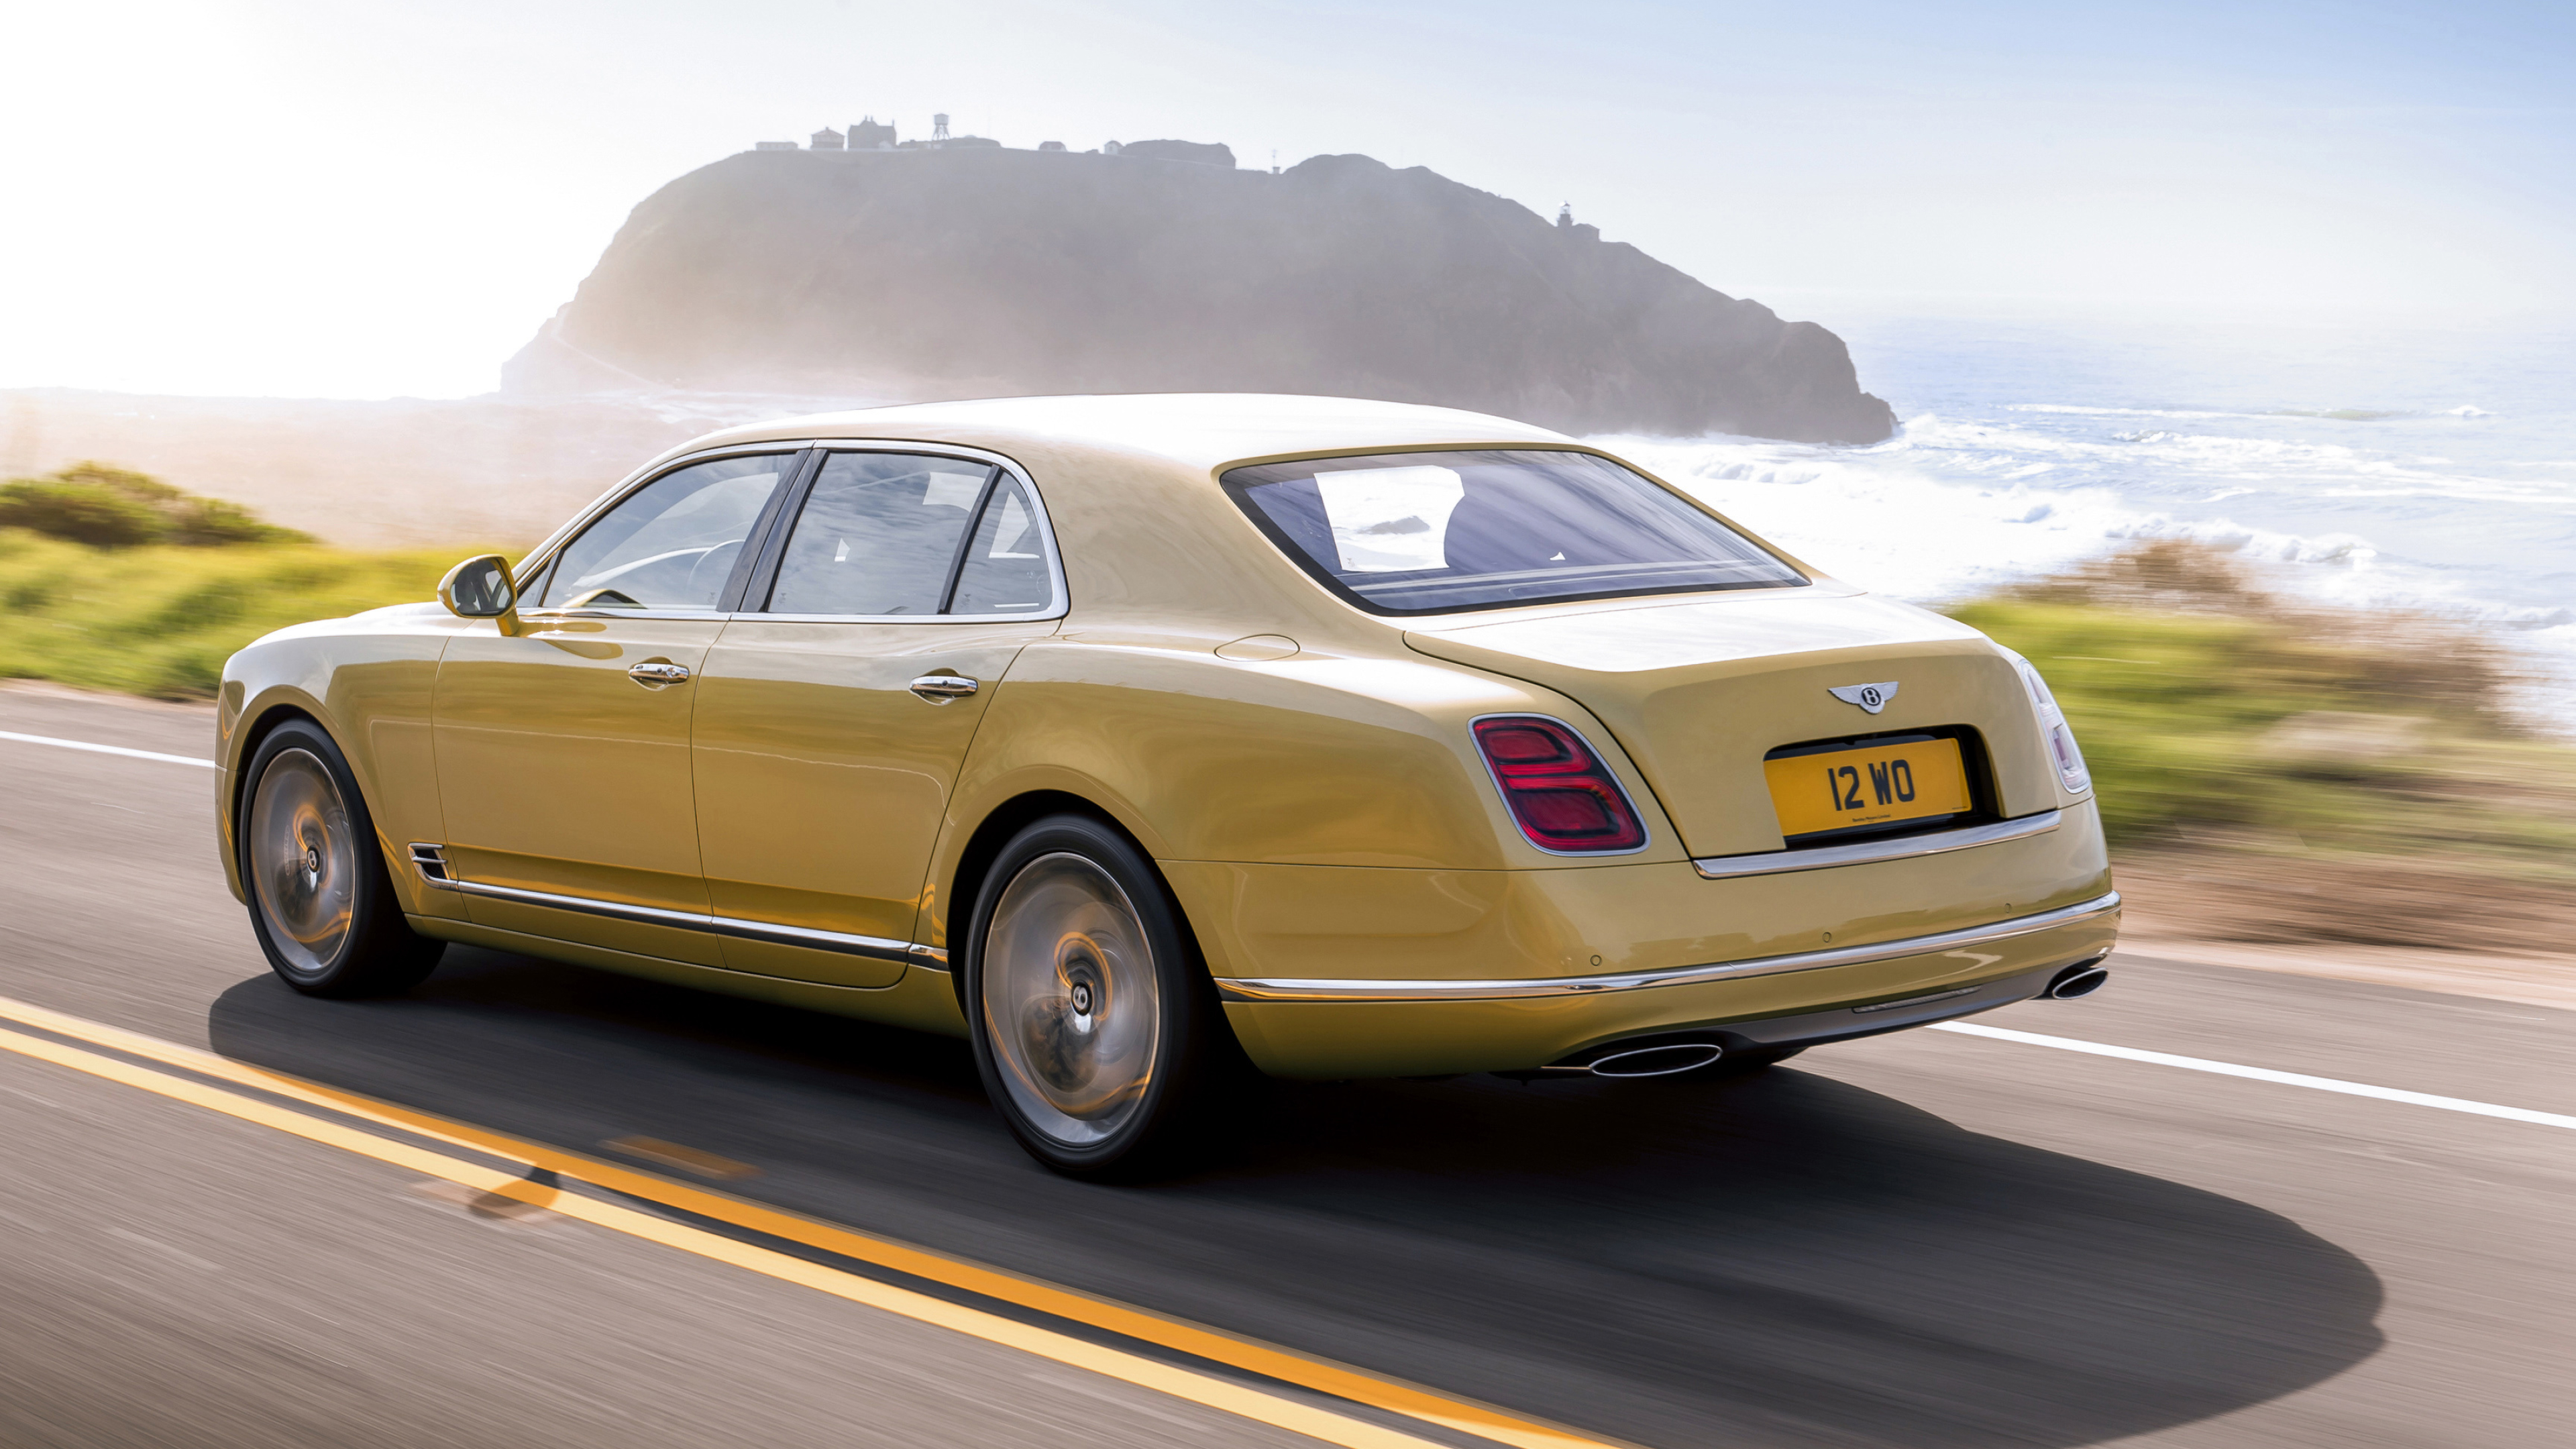 Bentley Mulsanne, Cars desktop wallpapers, 4K Ultra HD, Luxury vehicles, 3840x2160 4K Desktop